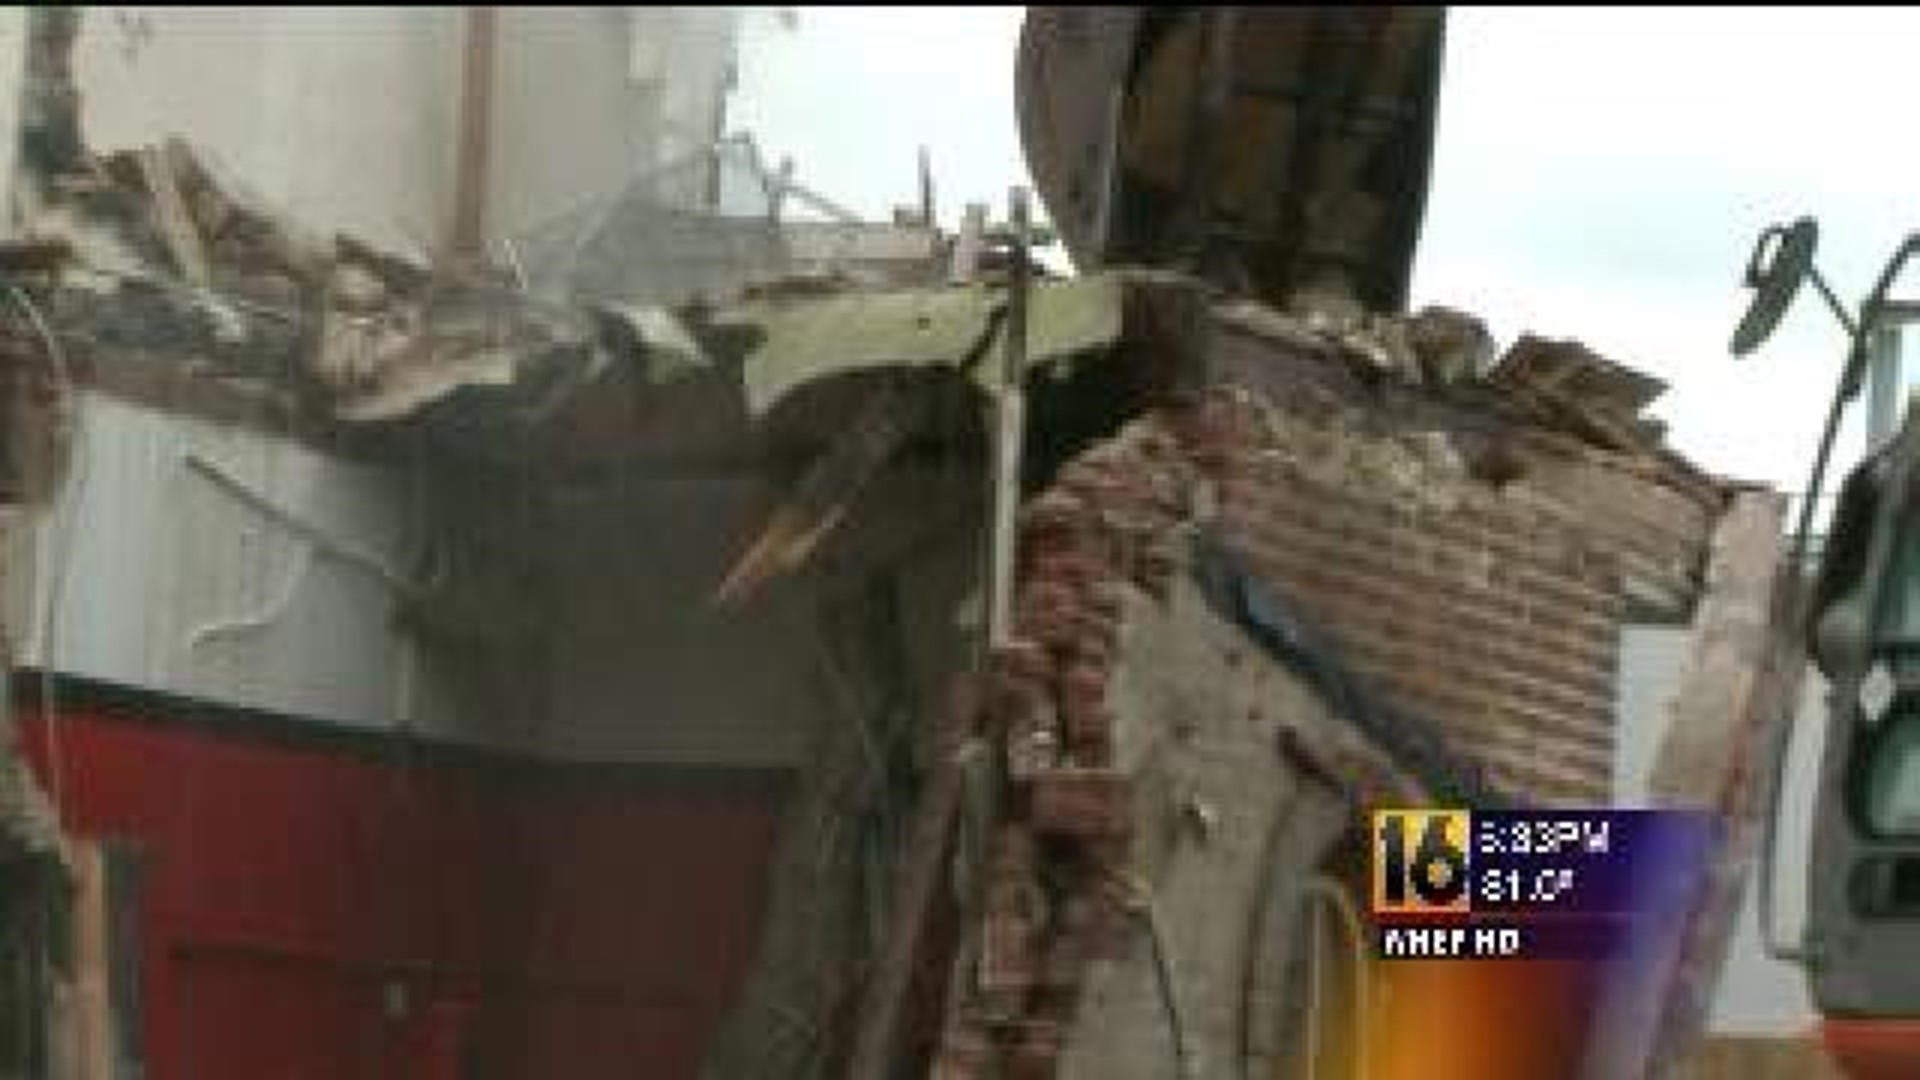 Demolition Underway On Historic Lansford Building